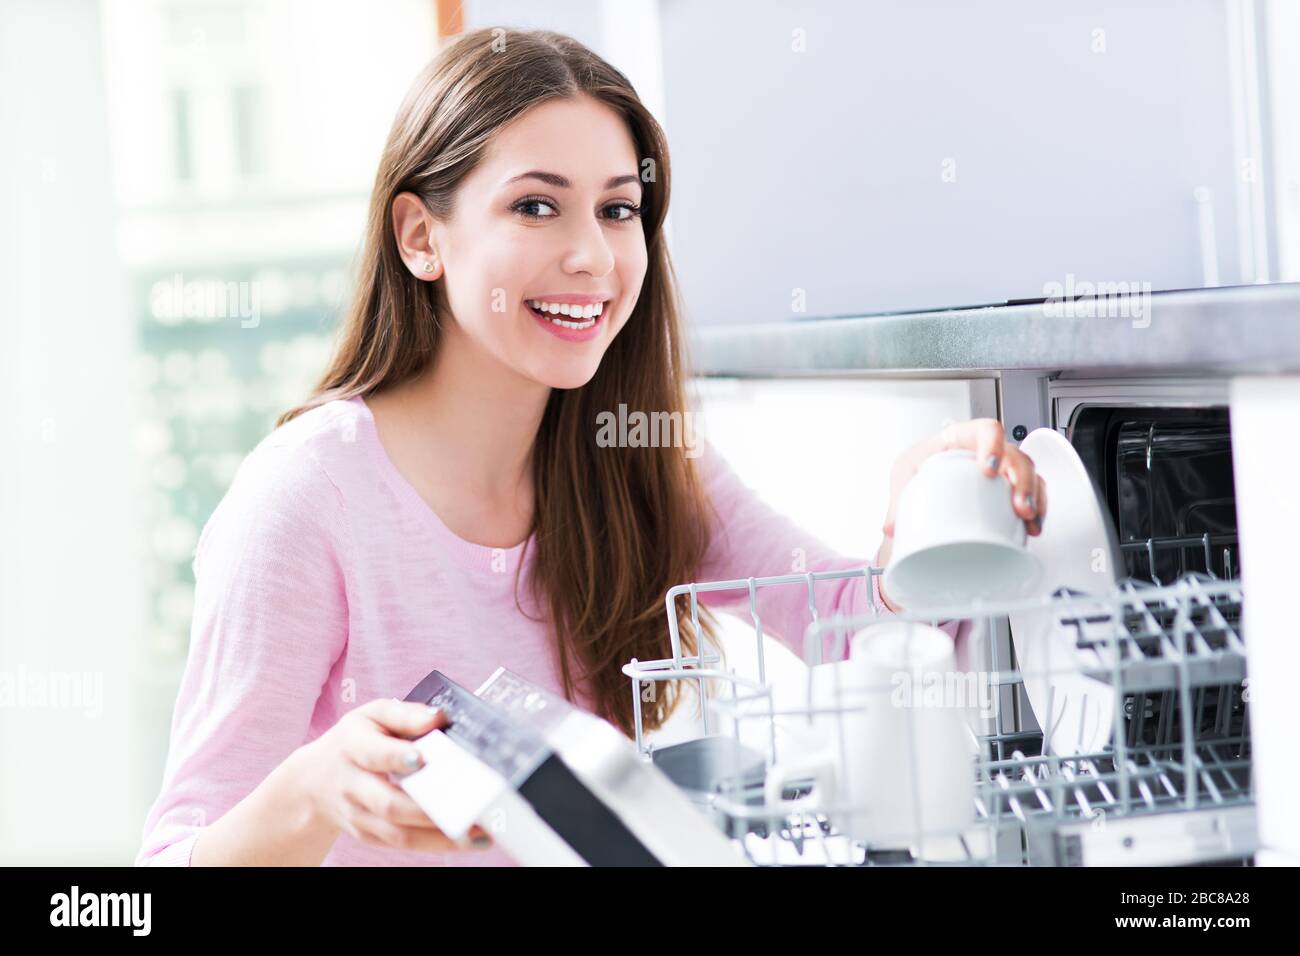 Woman loading dishwasher Stock Photo